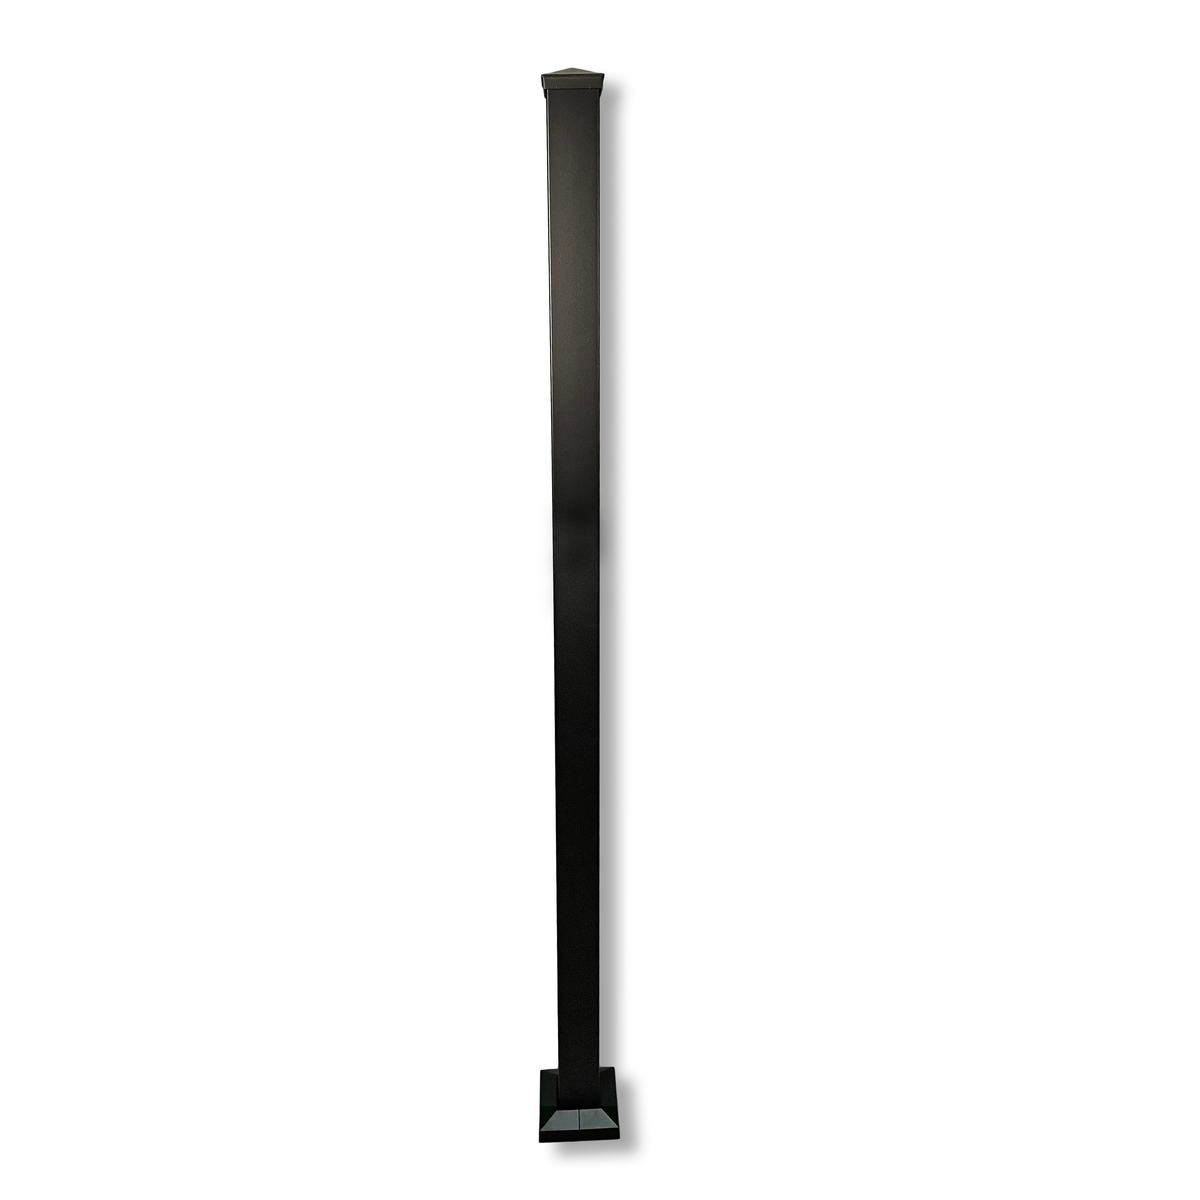 Sunbelly Screen Post (standard height) - Black